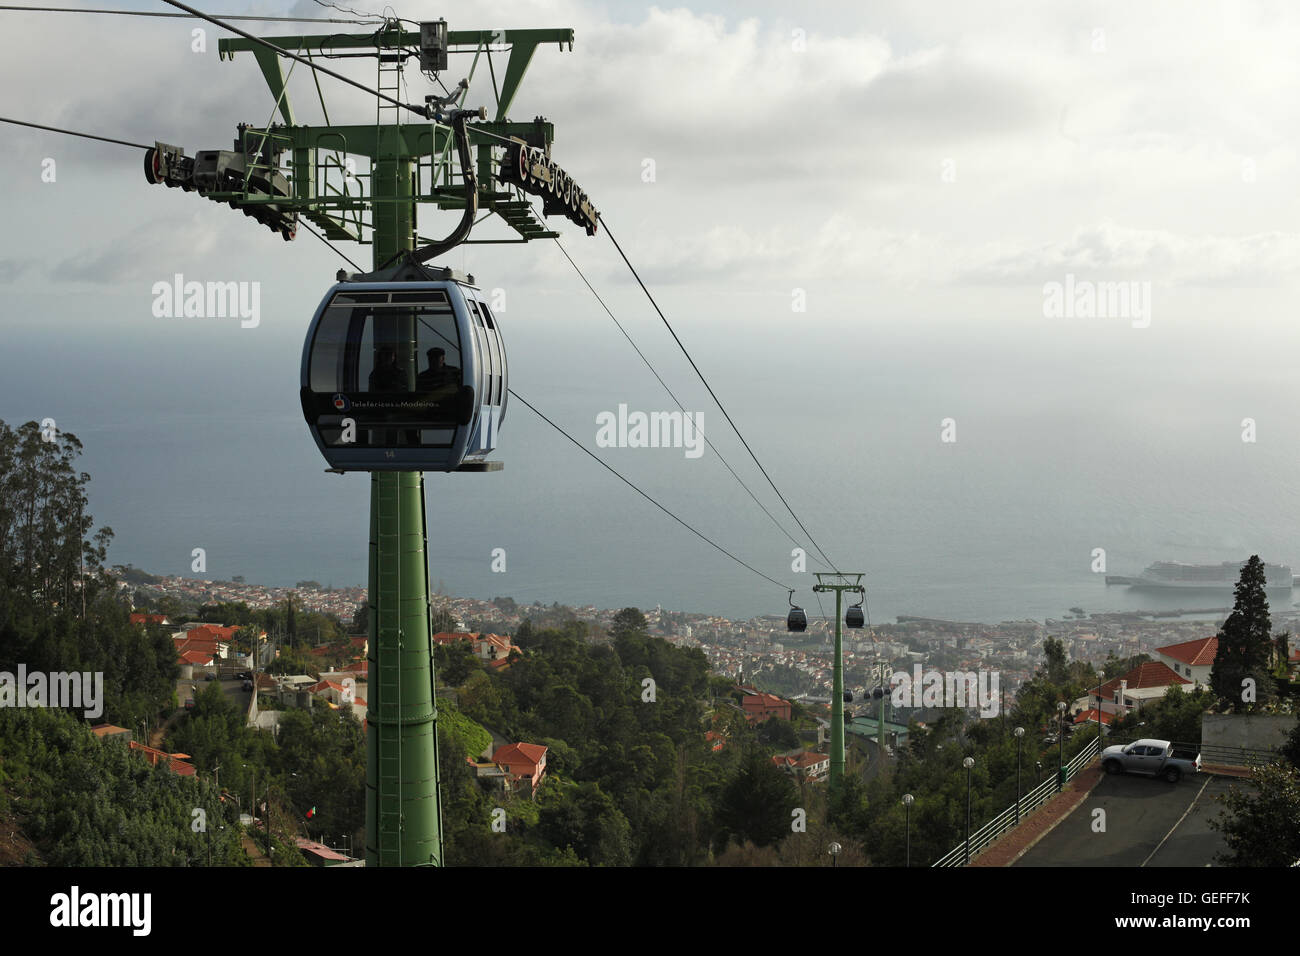 O Teleférico do Funchal ou do Monte. Superbe vue du téléphérique passant jusqu'à la montagne de la ville de Funchal, Madère Banque D'Images